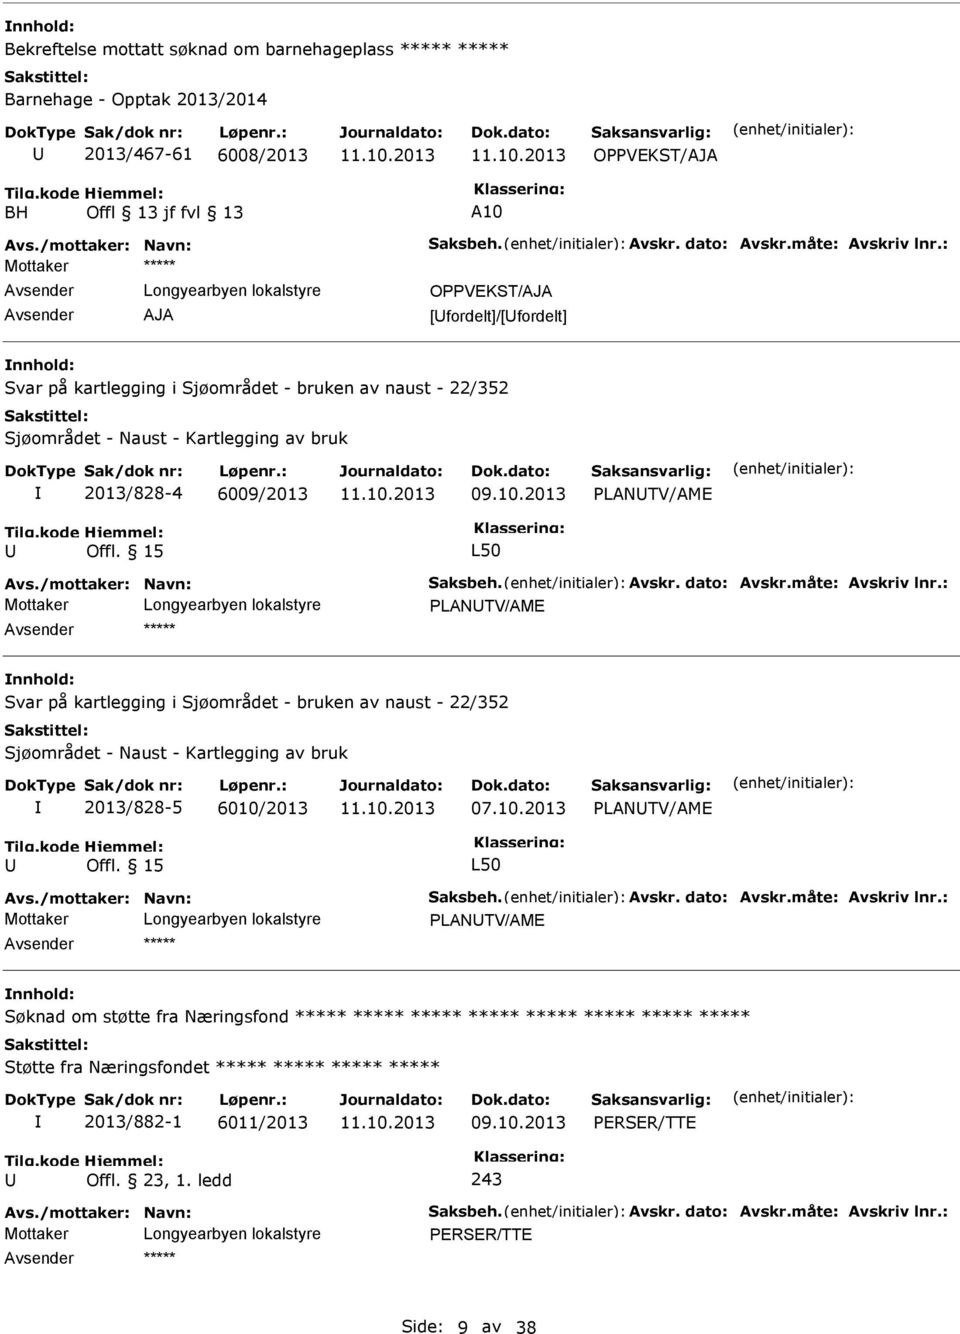 : Mottaker Longyearbyen lokalstyre AJA OPPVEKST/AJA [fordelt]/[fordelt] Svar på kartlegging i Sjøområdet - bruken av naust - 22/352 Sjøområdet - Naust - Kartlegging av bruk 2013/828-4 6009/2013 09.10.